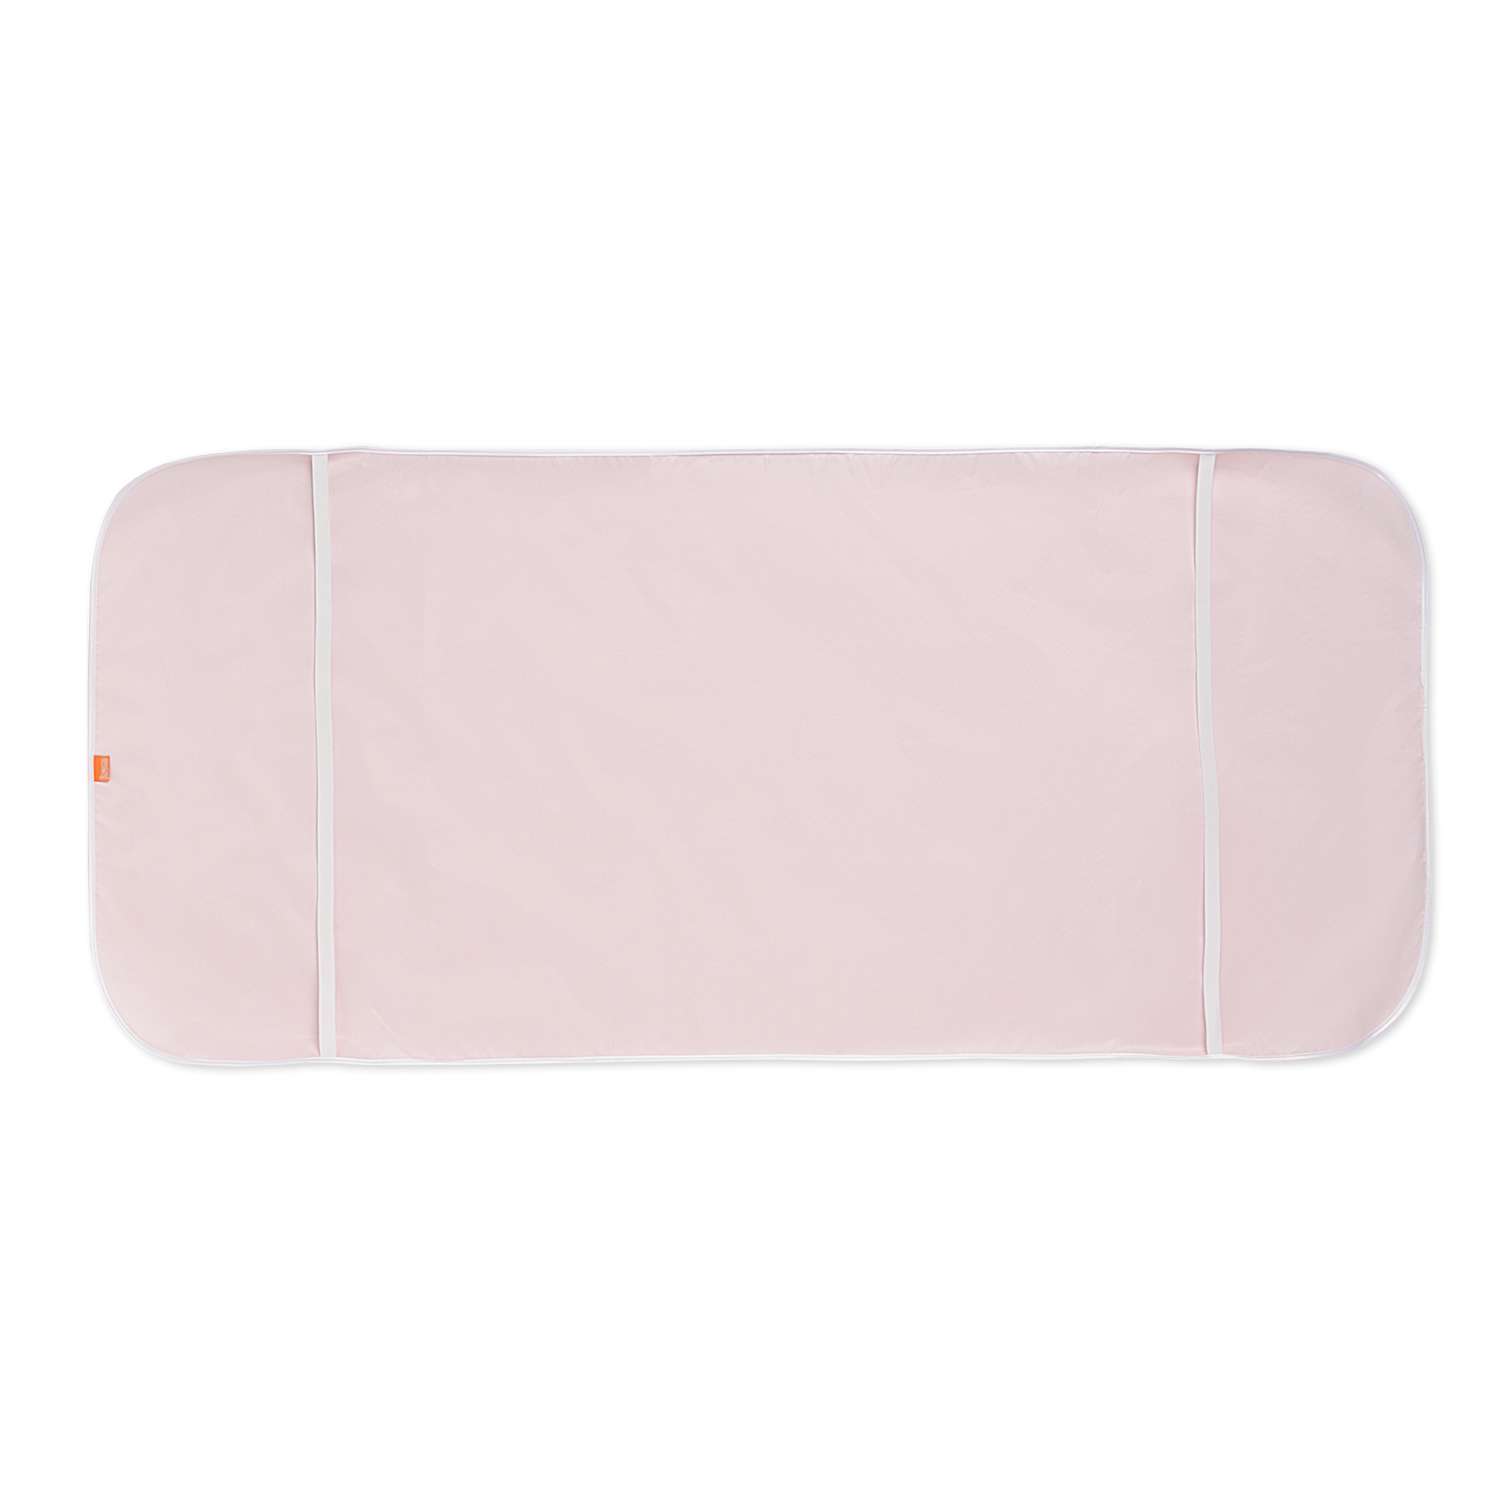 Наматрасник в кроватку Витоша непромокаемый 60х 120 Розовый - фото 4